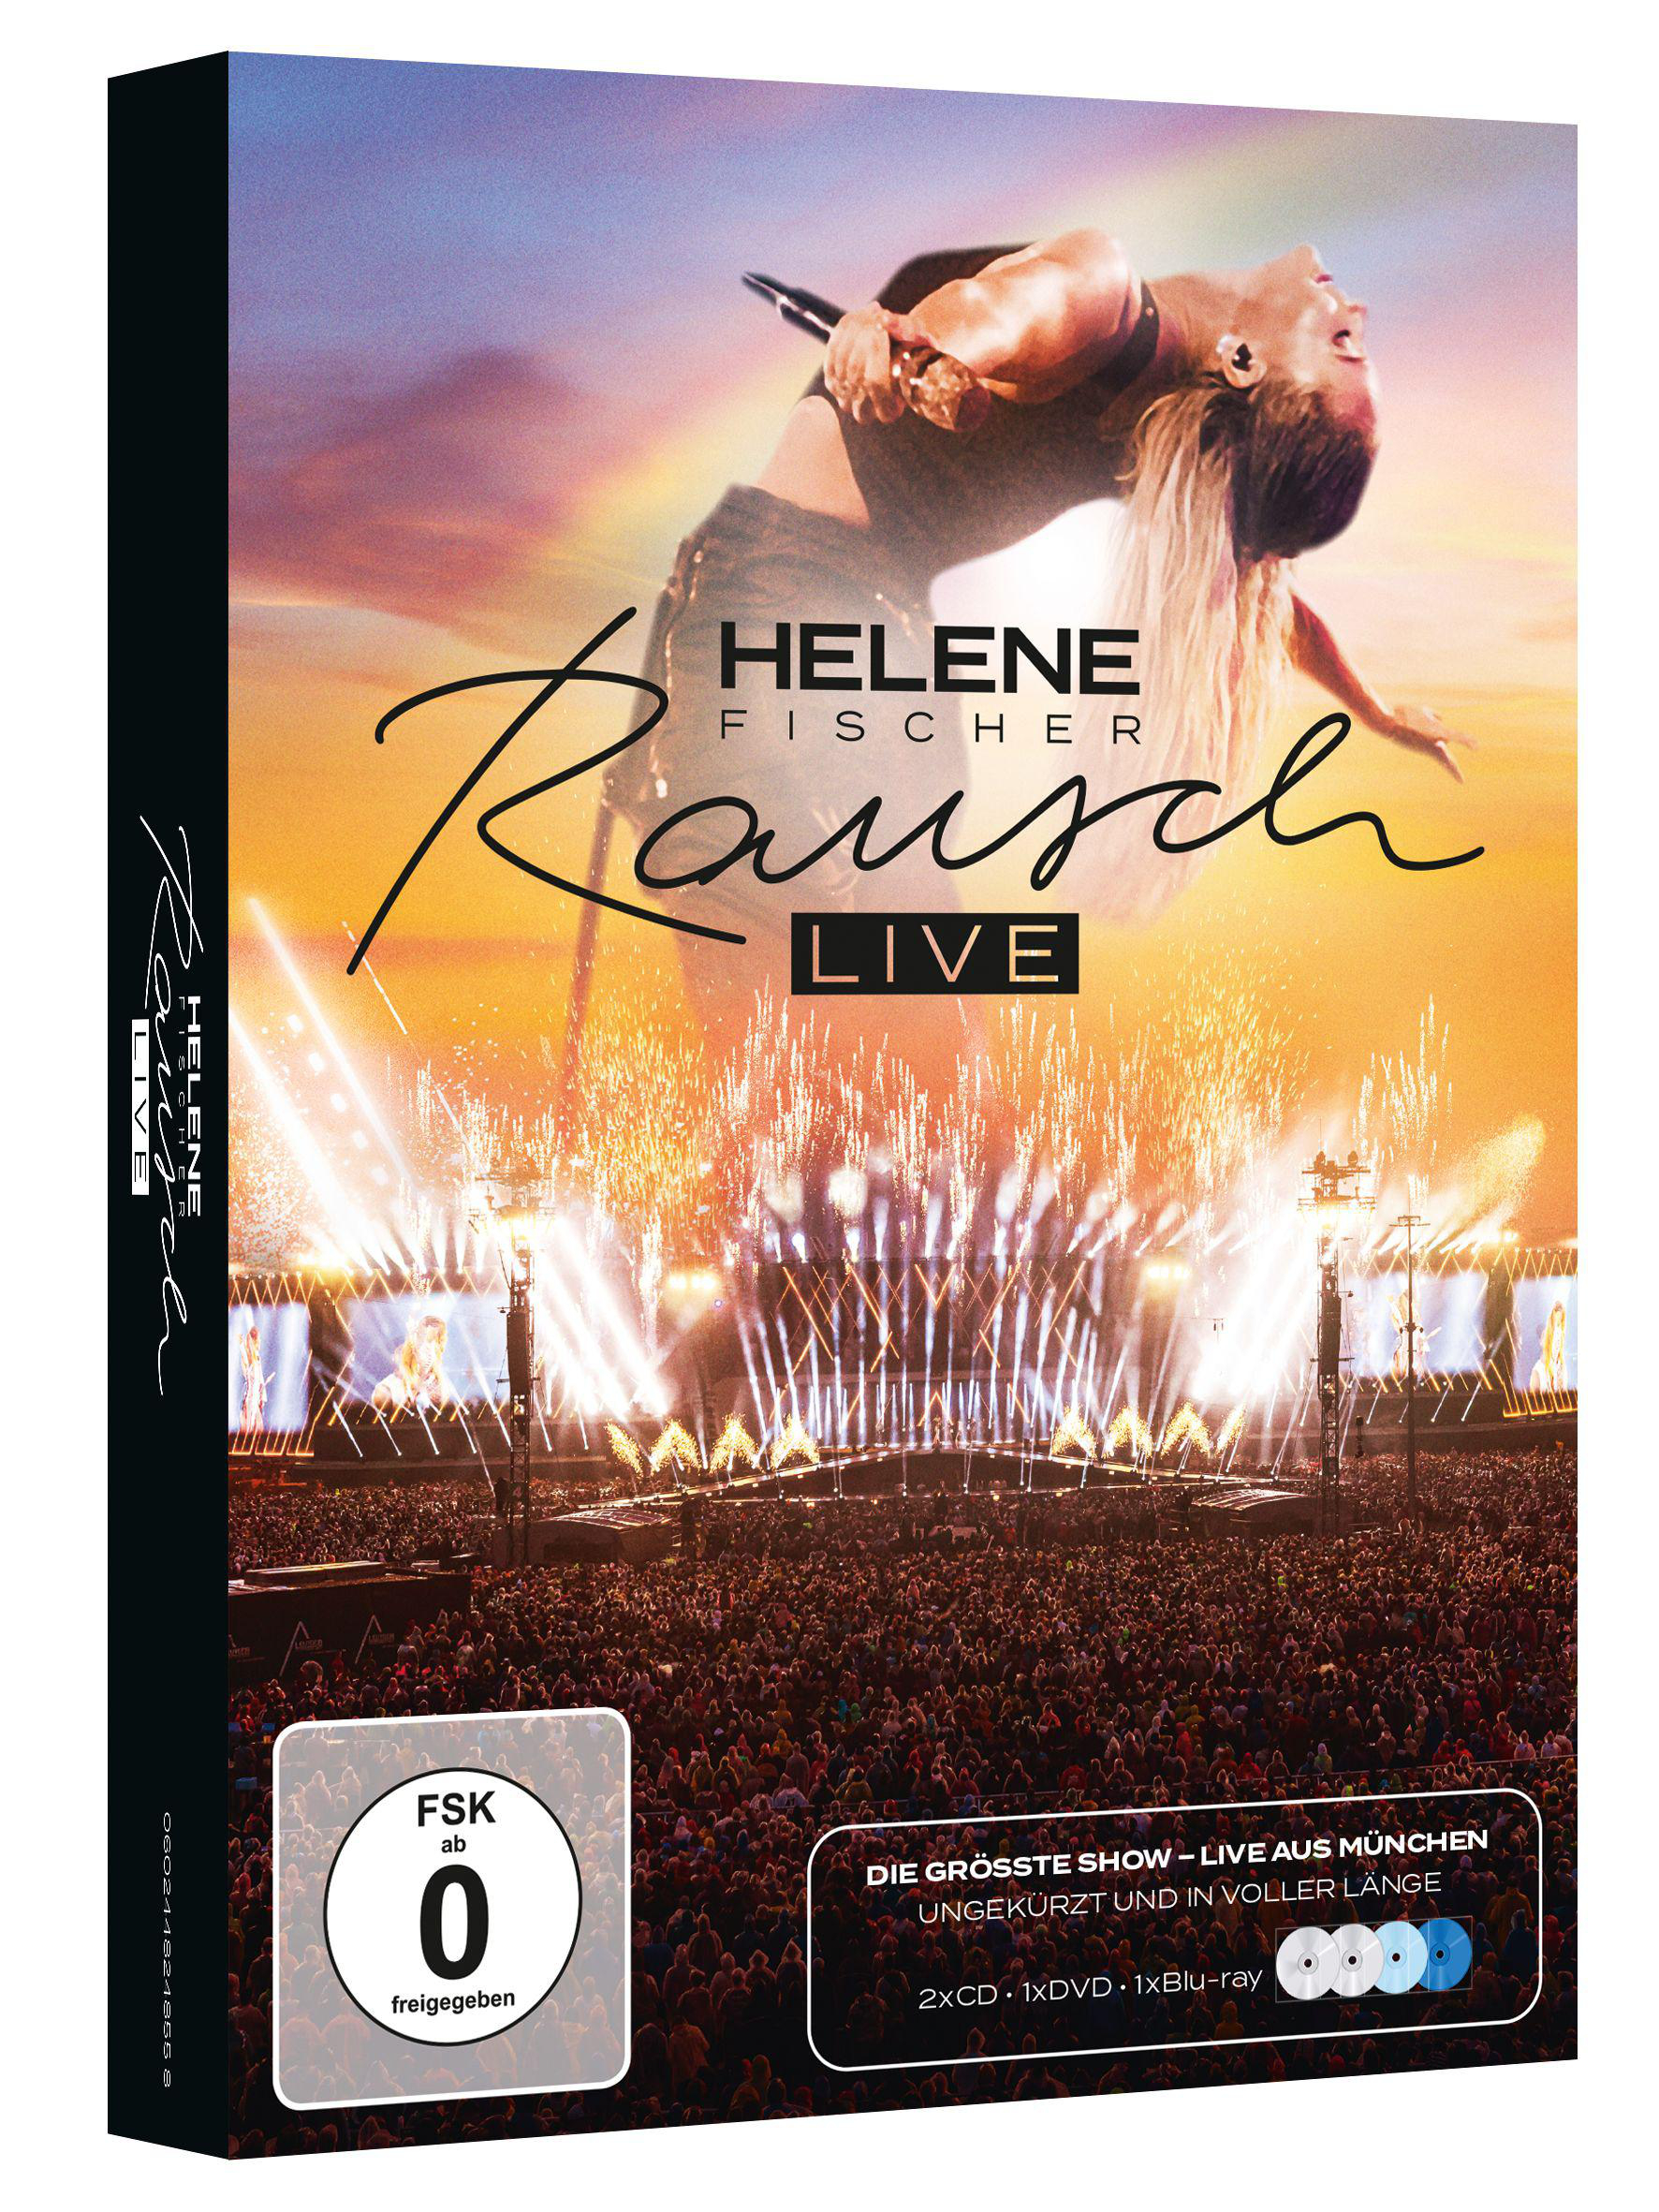 - (Live) (CD 2CD/DVD/Bluray - Fischer Rausch + Helene DVD Video)